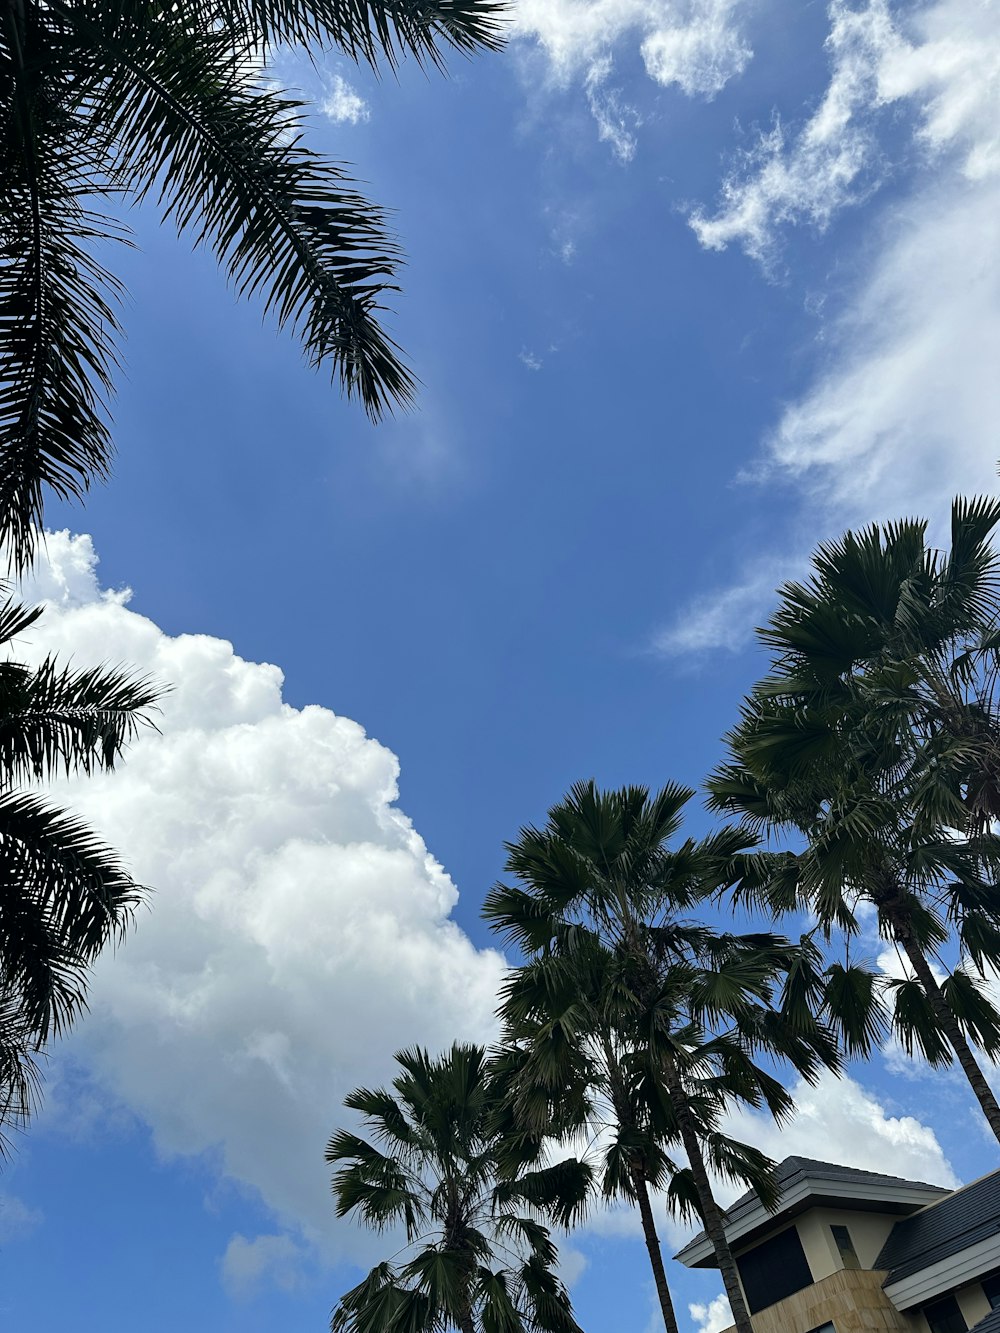 palmeras y un edificio bajo un cielo azul nublado